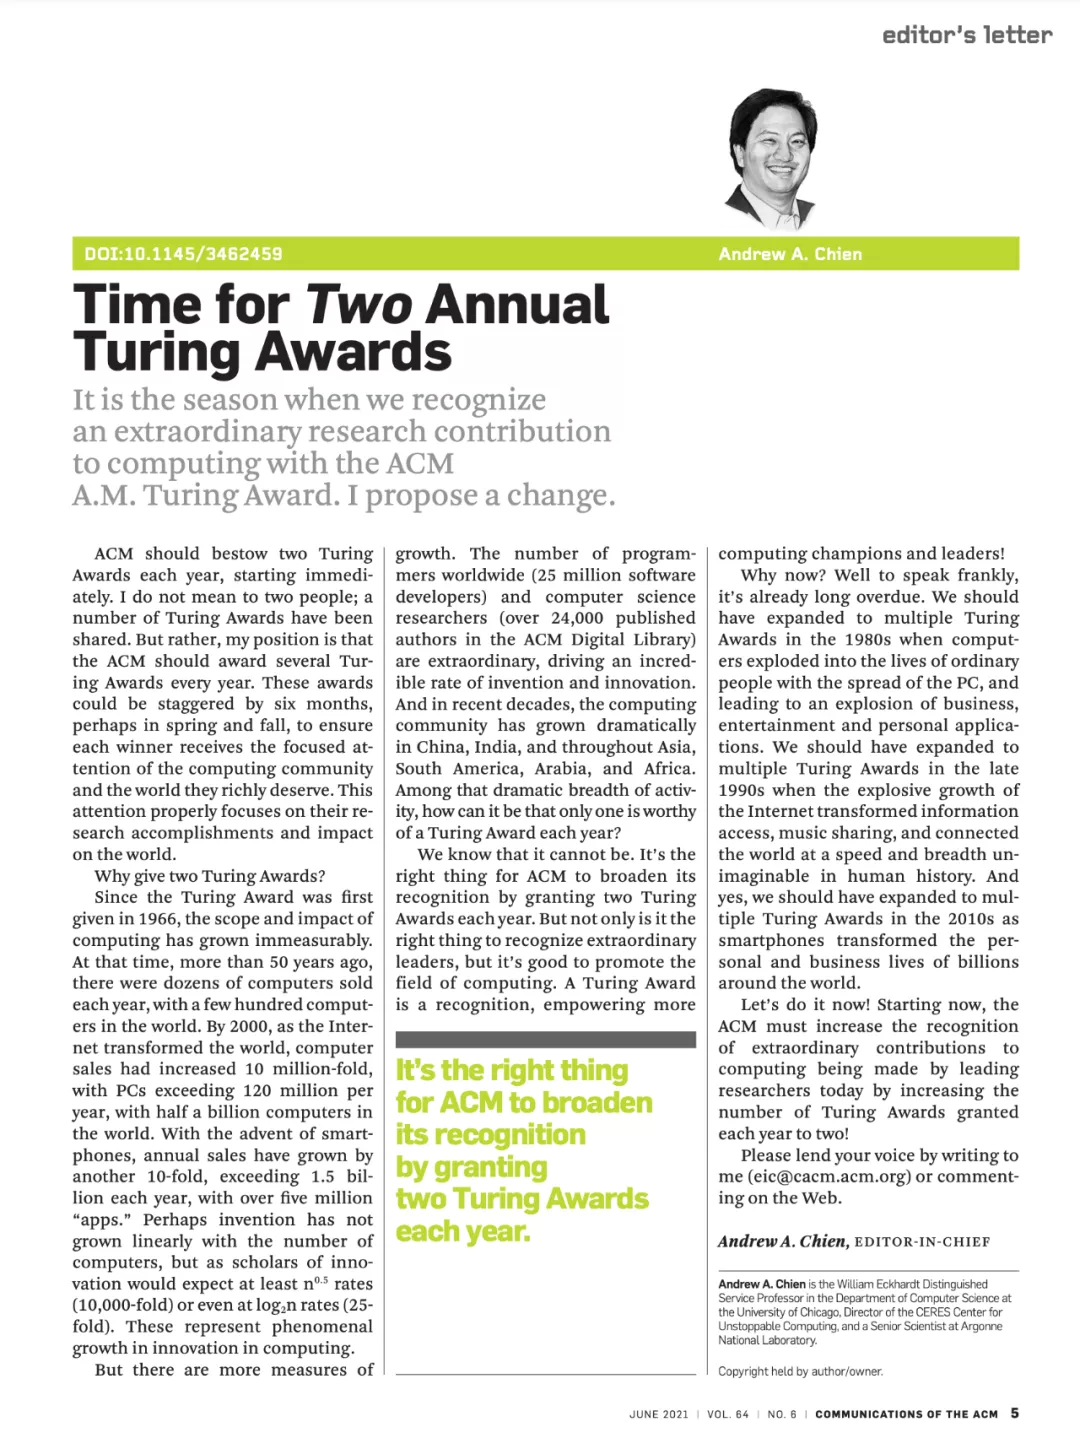 每年颁发两个图灵奖？《ACM通讯》主编发文提议推动图灵奖改革